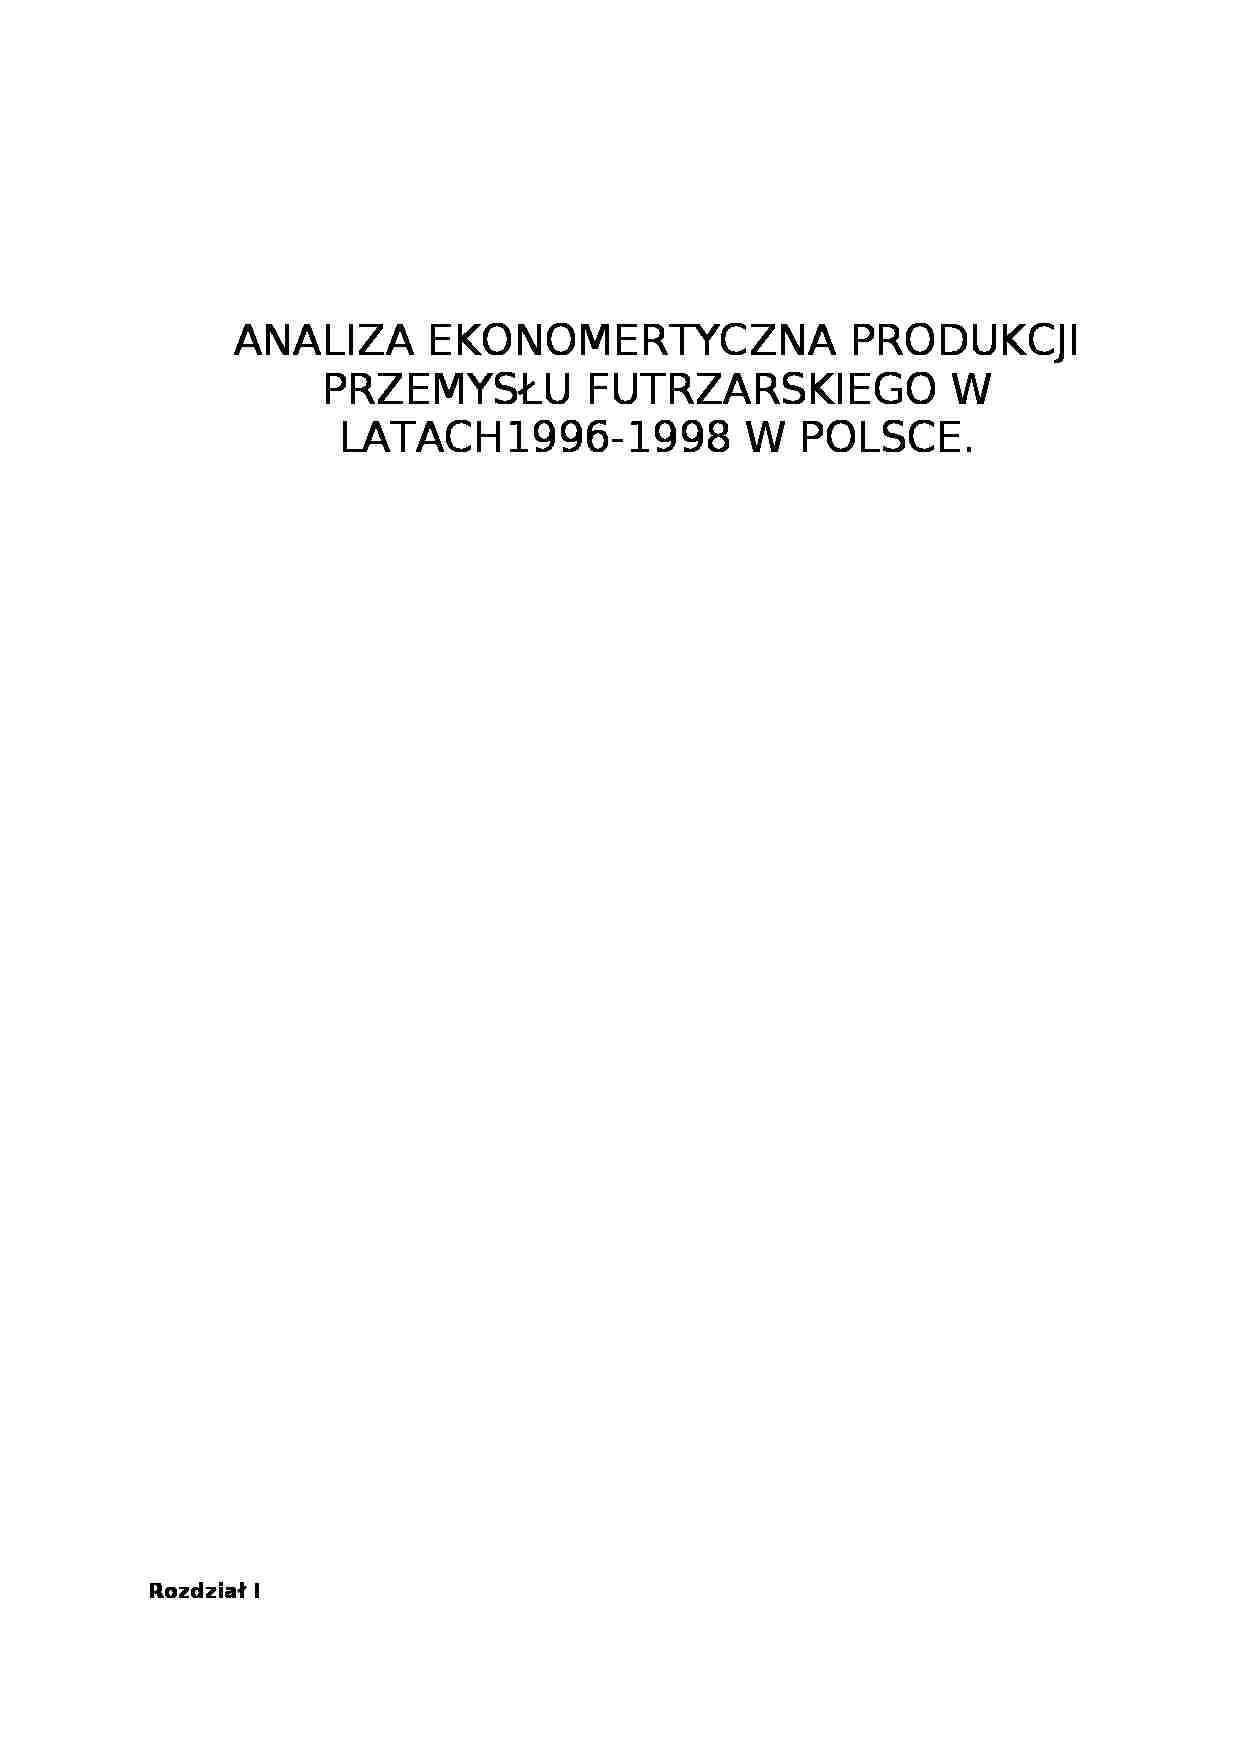 Analiza ekonometryczna przemysłu futrzarskiego w Polsce - strona 1